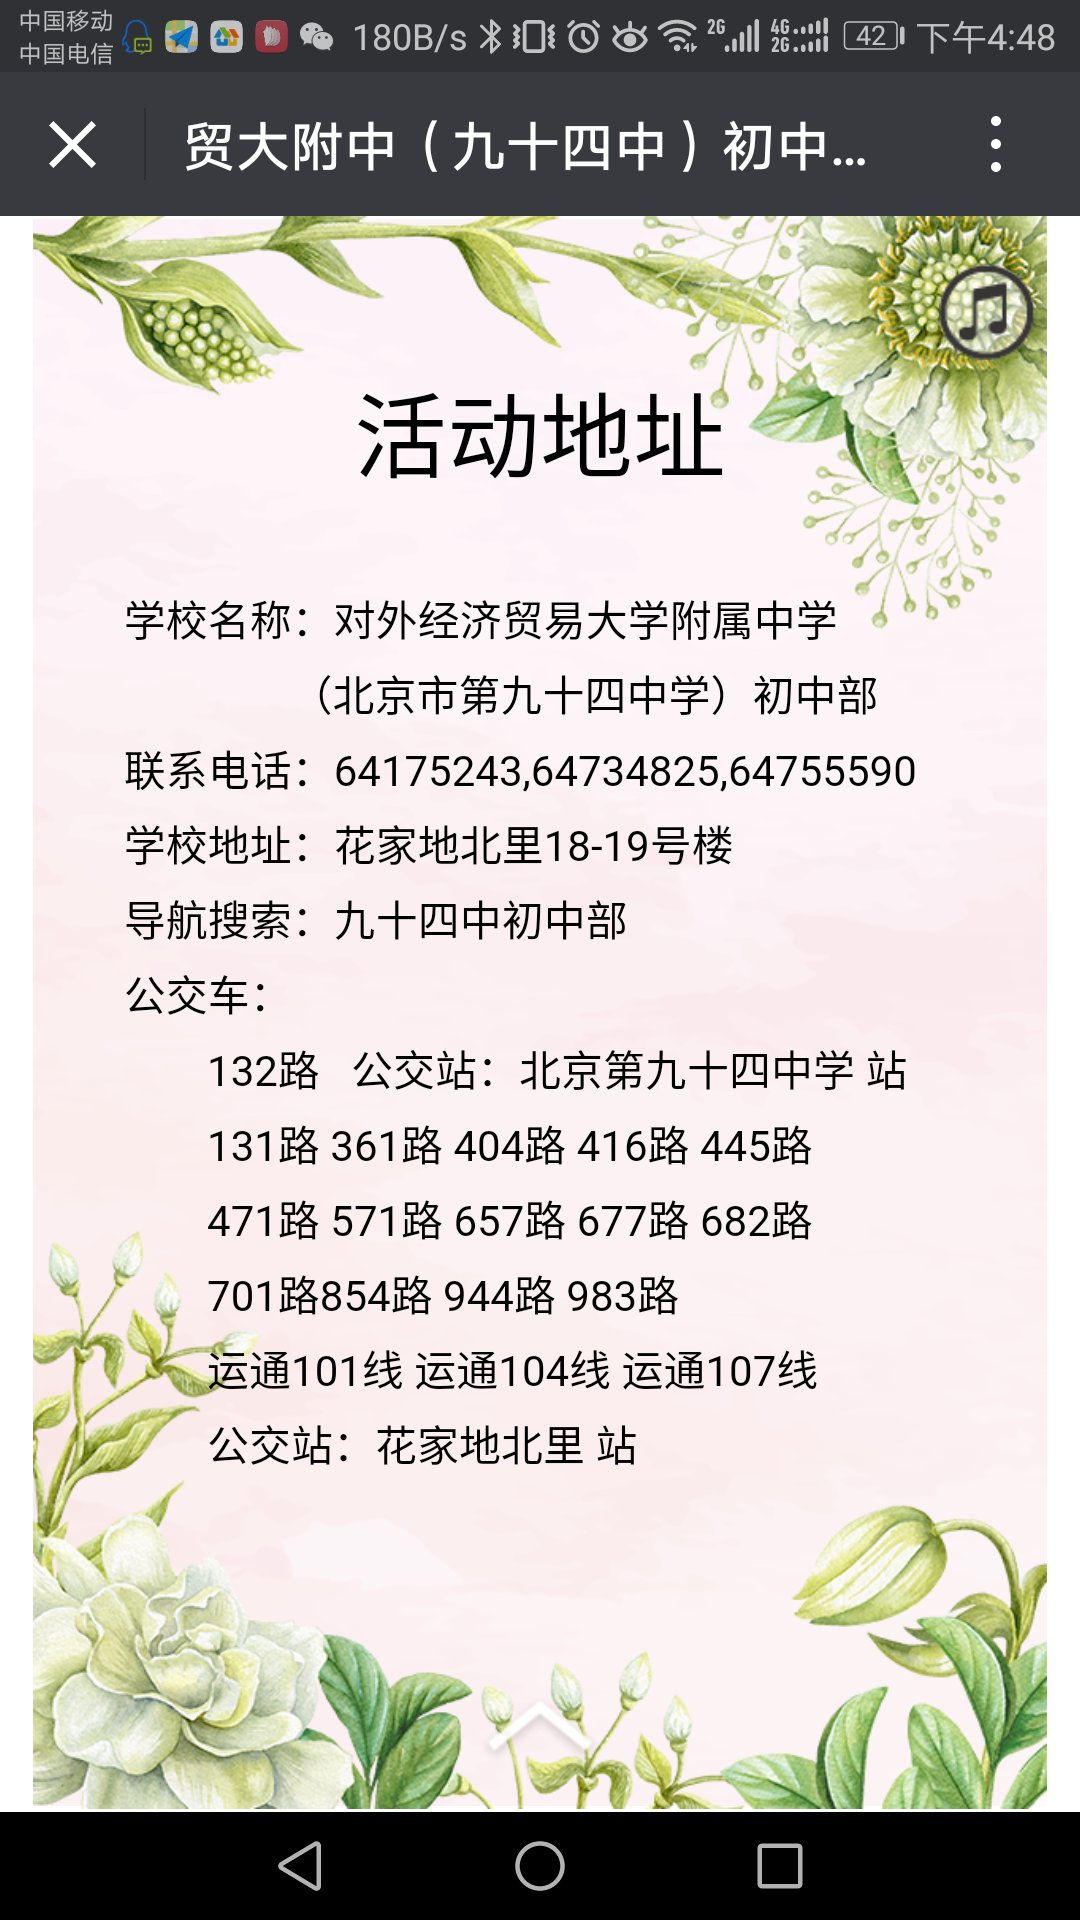 2018北京小升初对外经贸附属中学3月31日开放日3